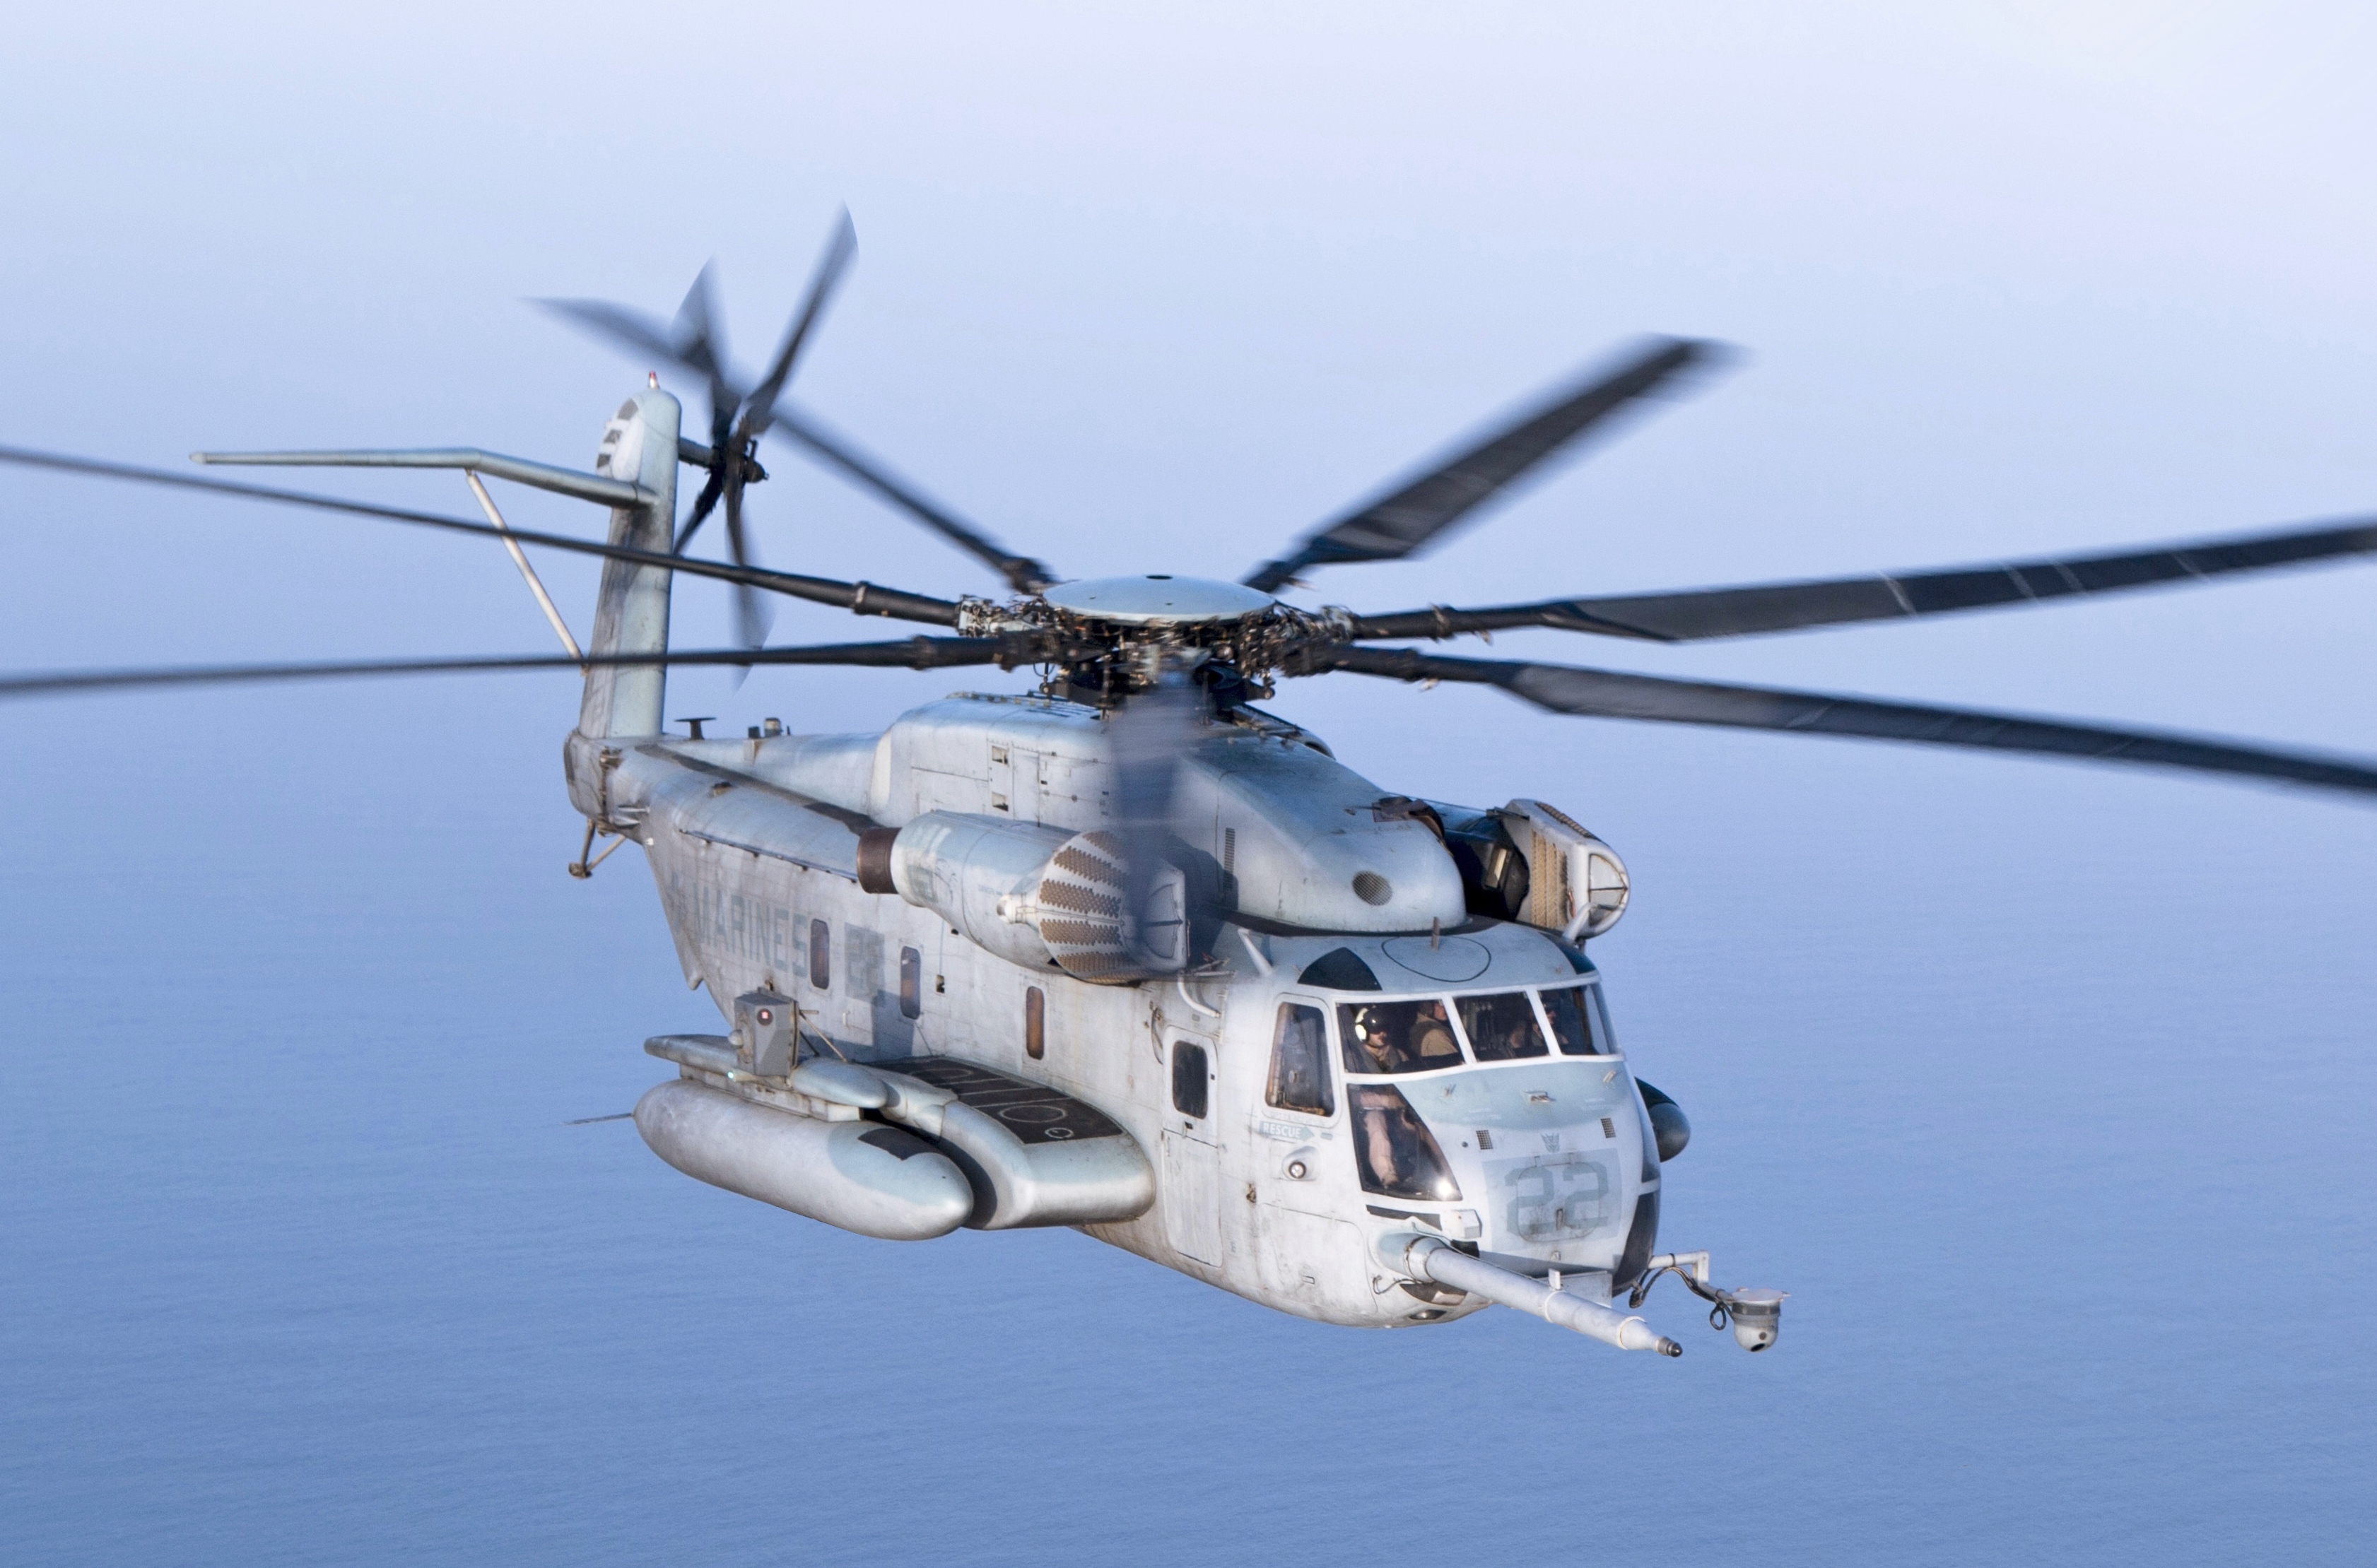 Sikorsky CH-53E Super Stallion - Wikipedia